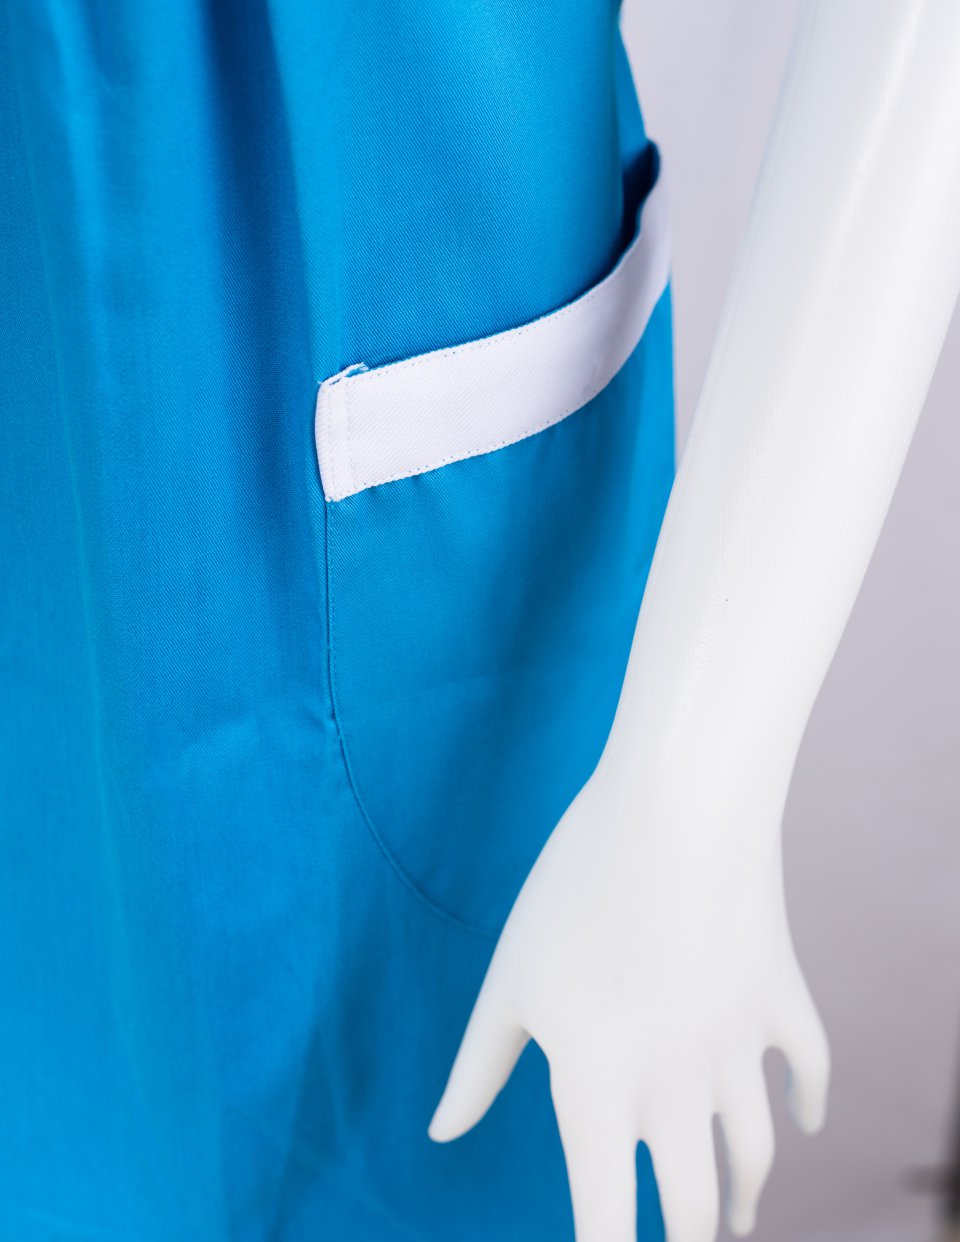 ตัวอย่างชุดคลุมท้องพนักงานบริษัท Fujita / นลินสิริ รับผลิตชุดคลุมท้องพนักงาน รับตัดชุดคลุมท้องรูปที่ 